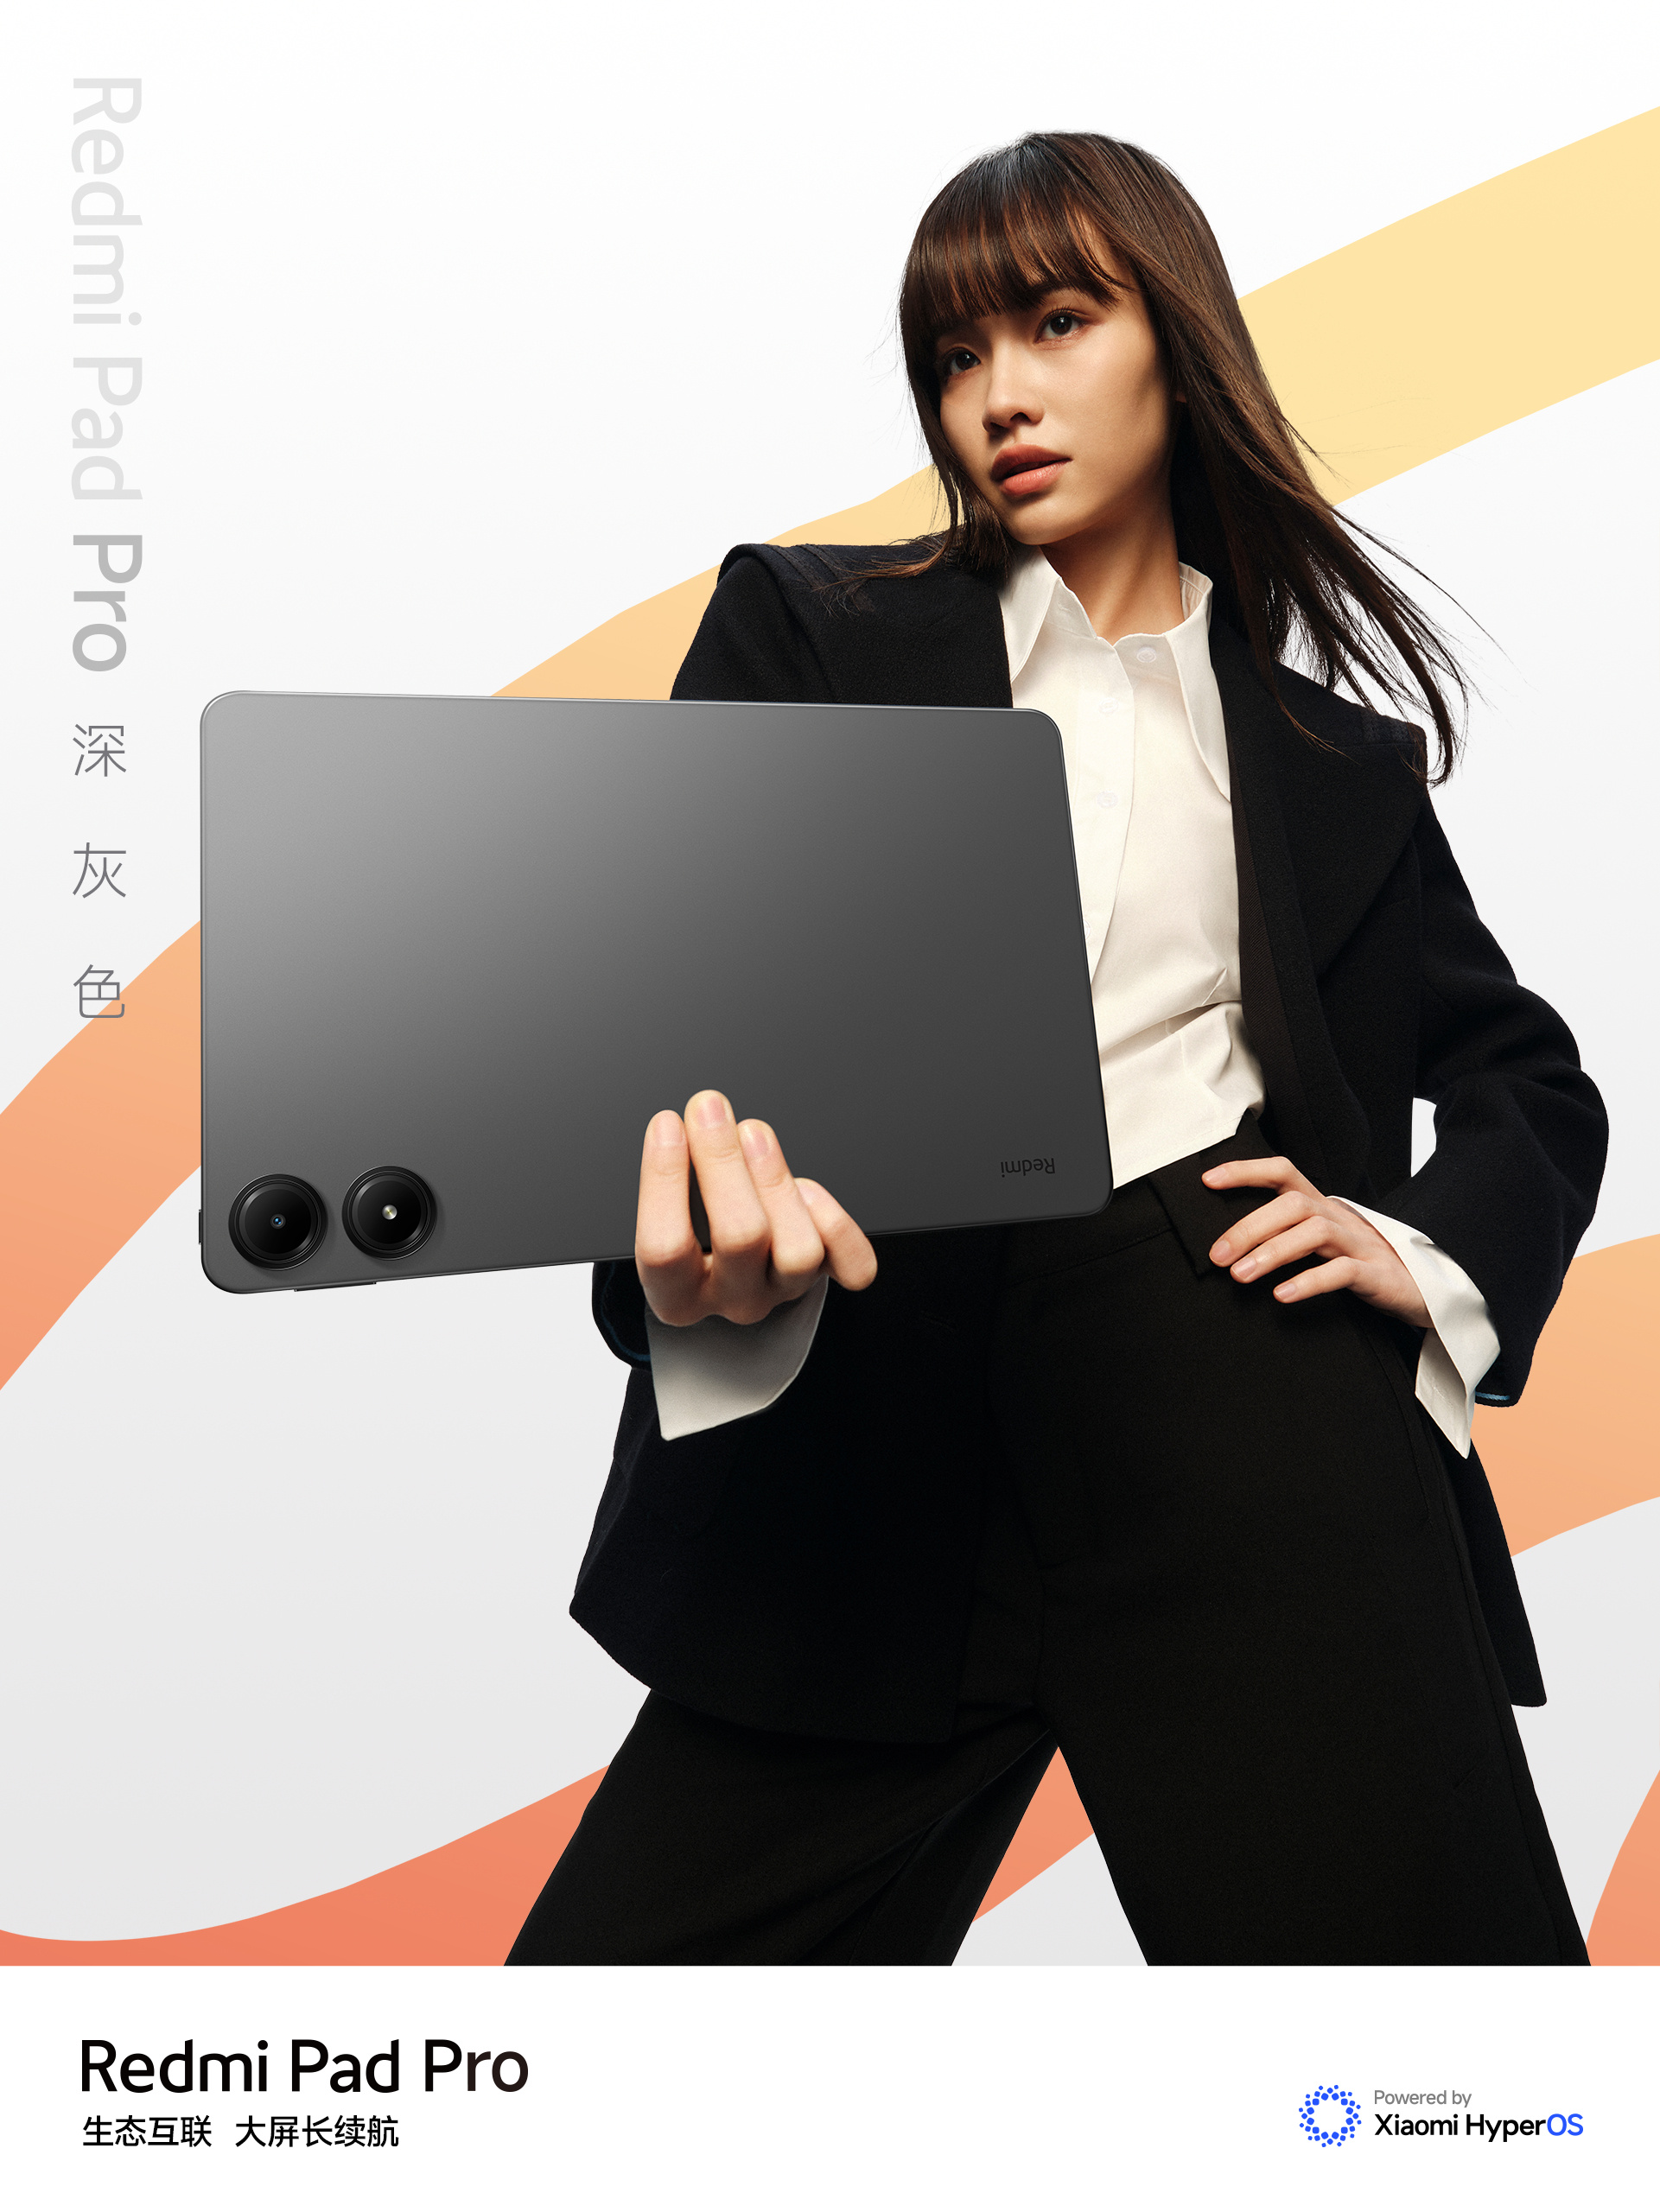 Xiaomi ra mắt máy tính bảng đẹp như iPad, chip Snapdragon 7s Gen 2 mạnh mẽ, pin 10.000mAh, giá chỉ hơn 5 triệu đồng- Ảnh 1.